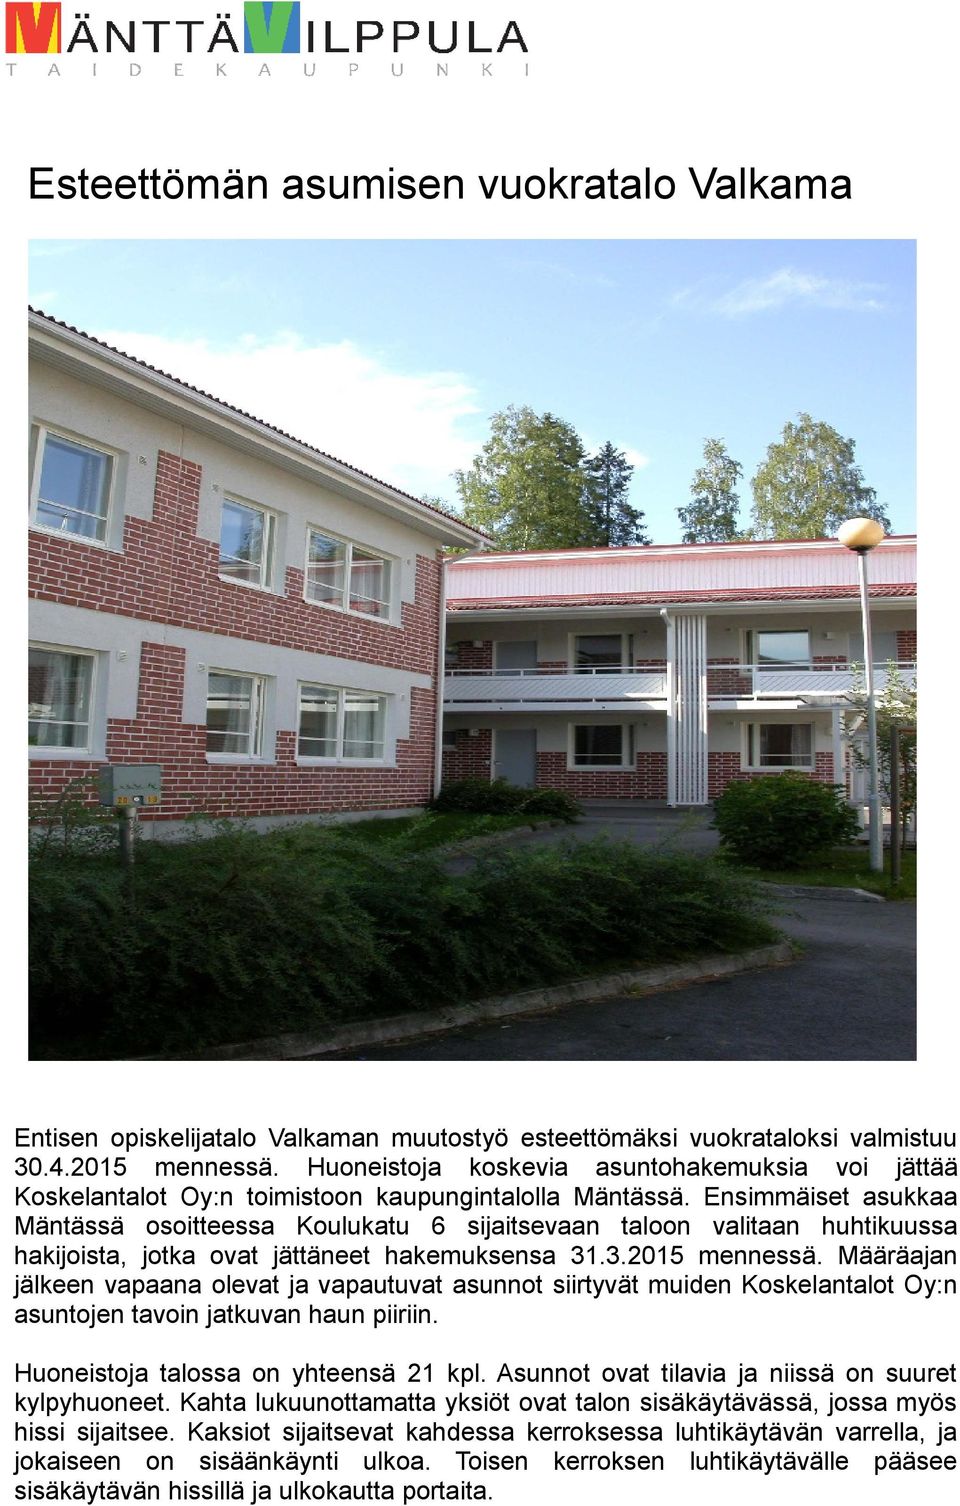 Ensimmäiset asukkaa Mäntässä osoitteessa Koulukatu 6 sijaitsevaan taloon valitaan huhtikuussa hakijoista, jotka ovat jättäneet hakemuksensa 31.3.2015 mennessä.